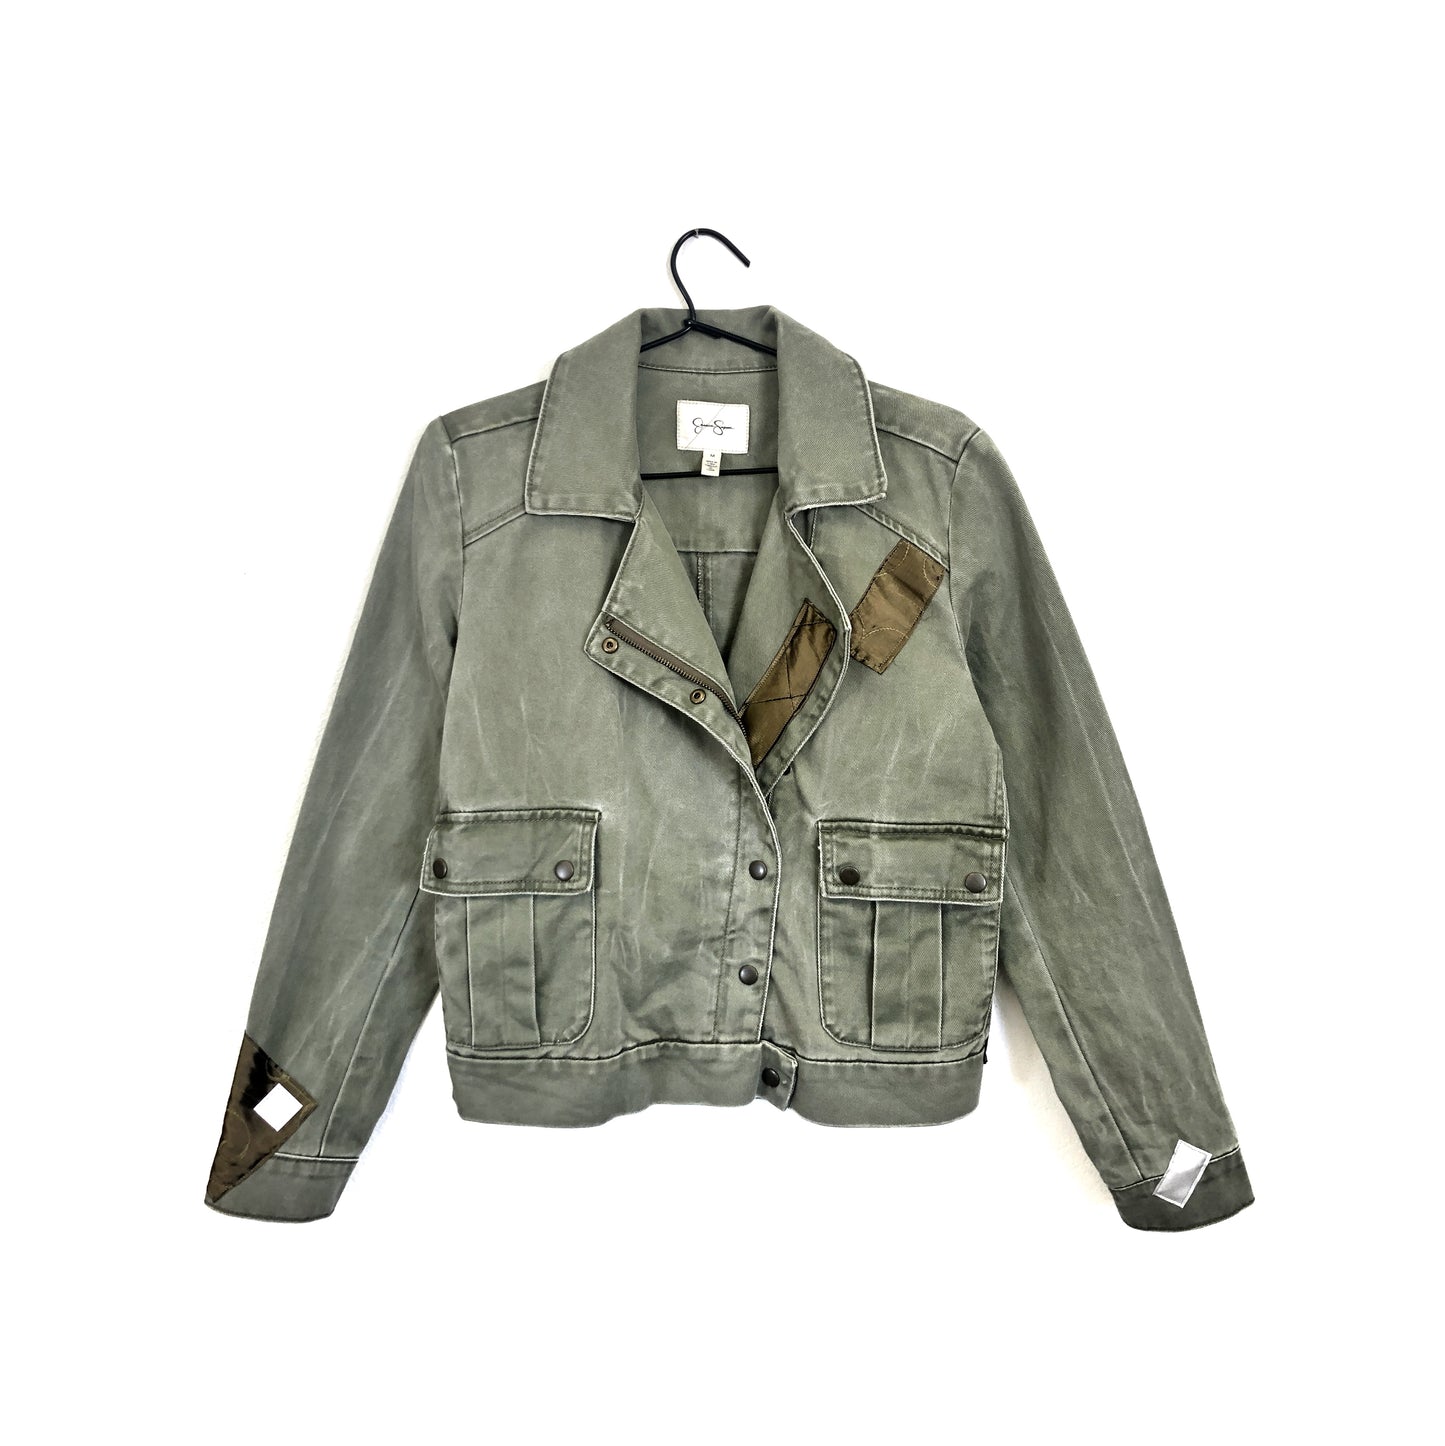 Reflective Jacket # 8 - Patch - Size S